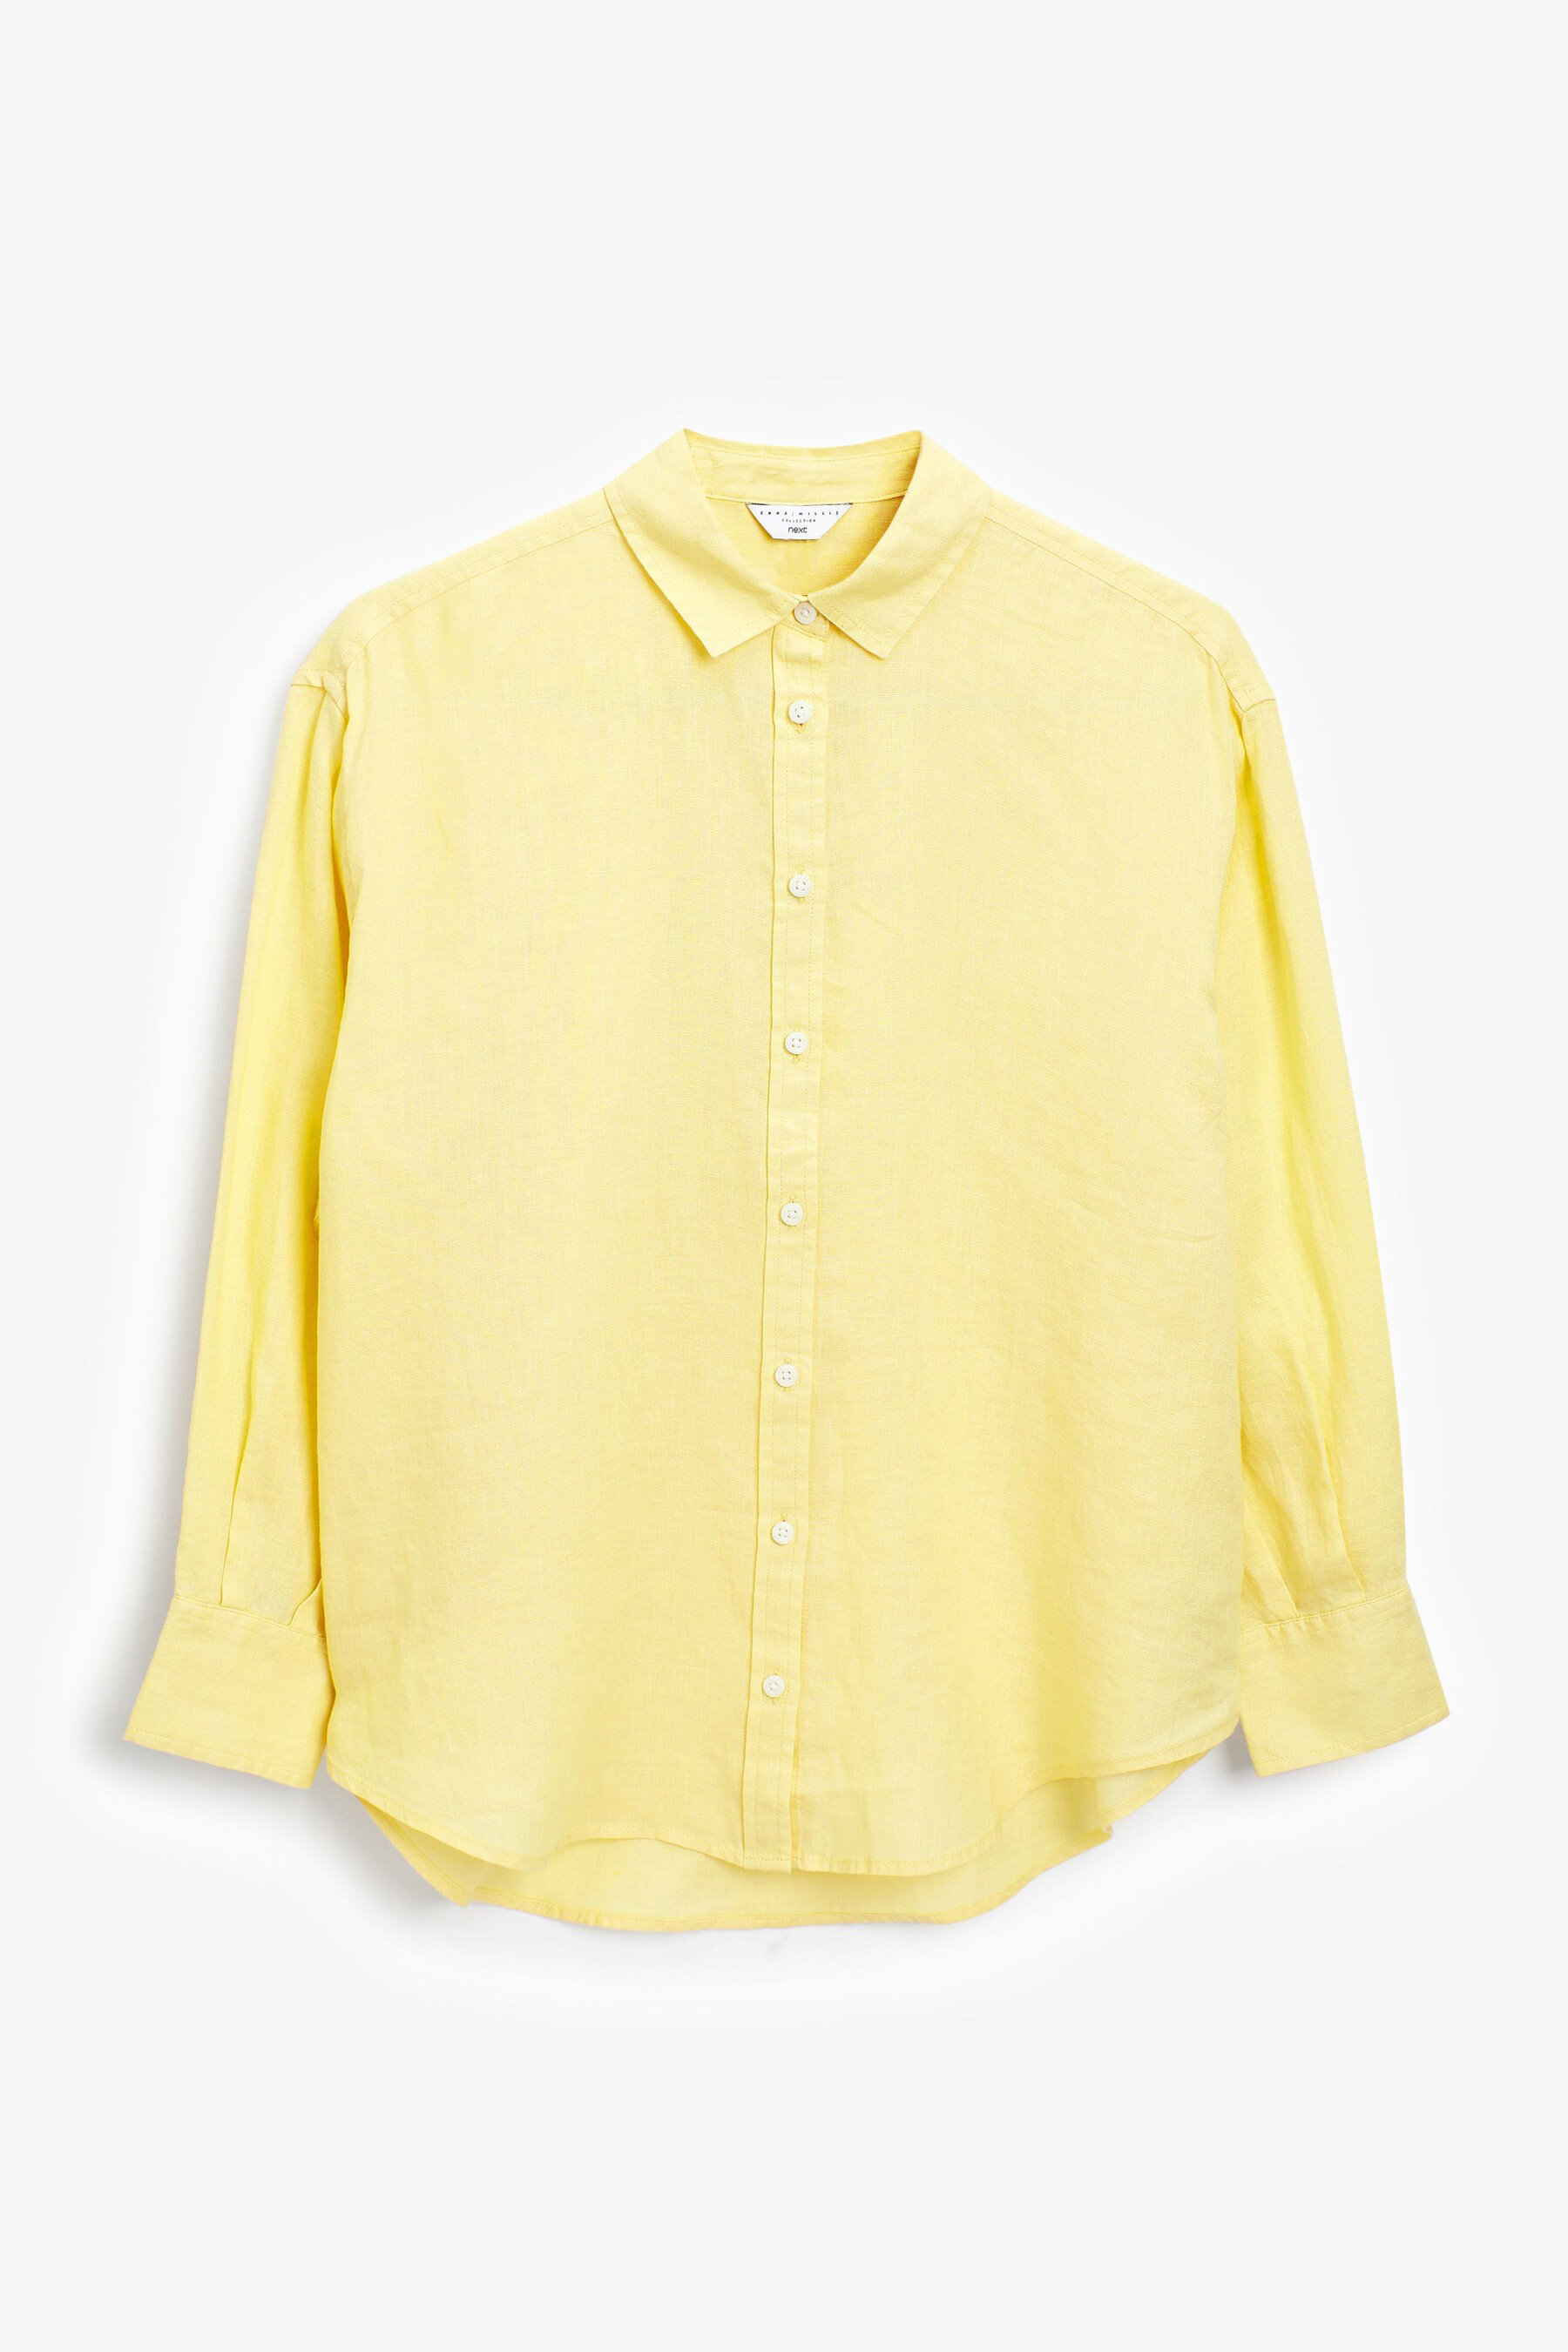 Shirt, £38.jpg